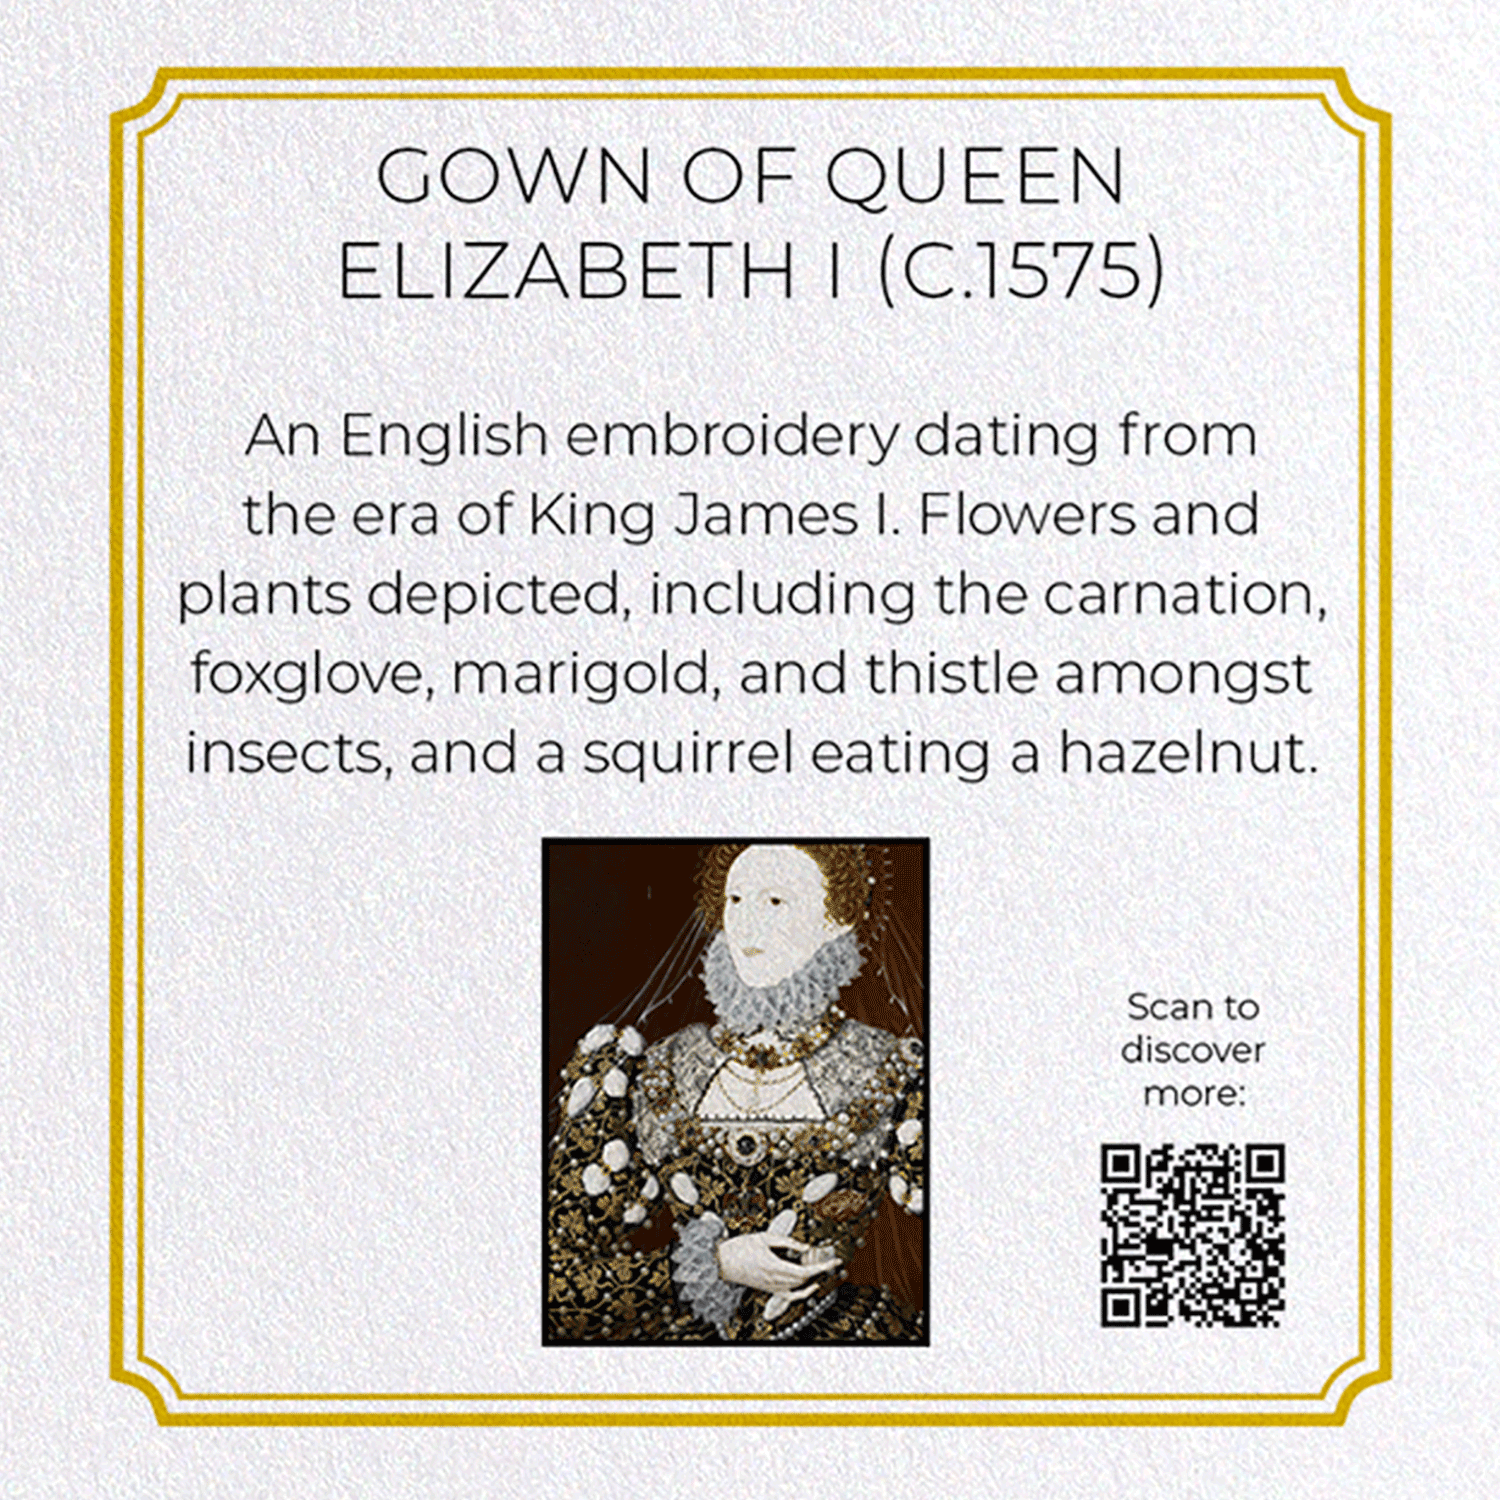 GOWN OF QUEEN ELIZABETH I (C.1575)